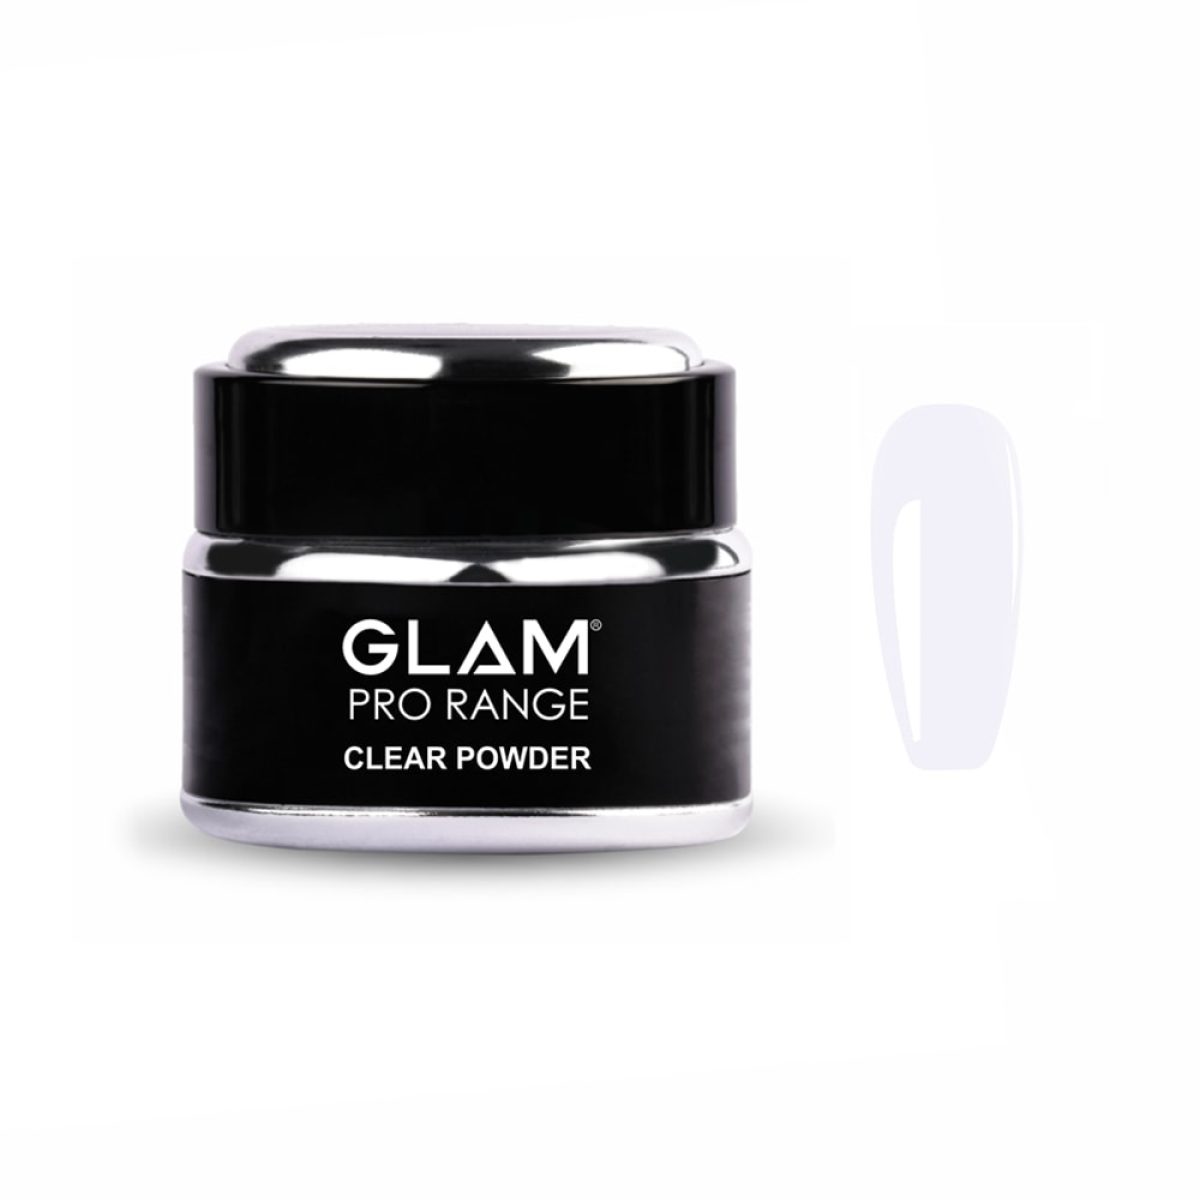 GLAM Crystal Clear Powder